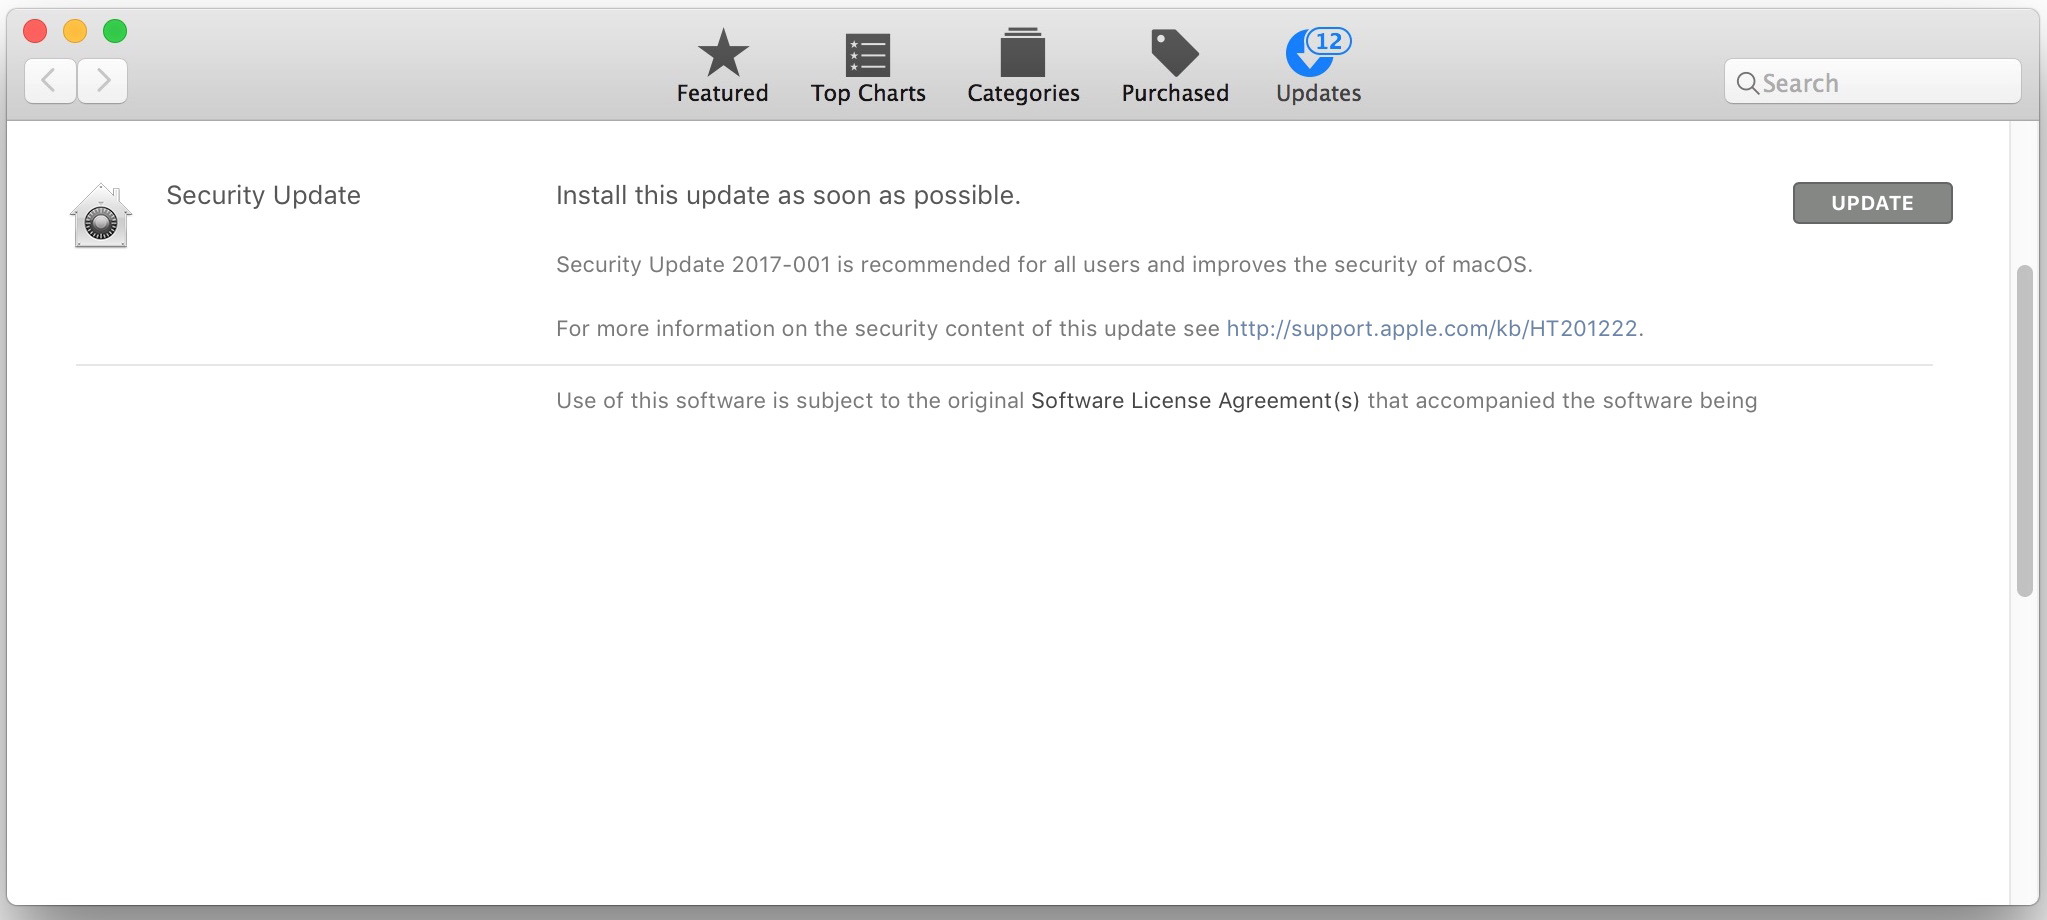 Aggiornamento della sicurezza per macOS High Sierra corregge il bug di login della password di root